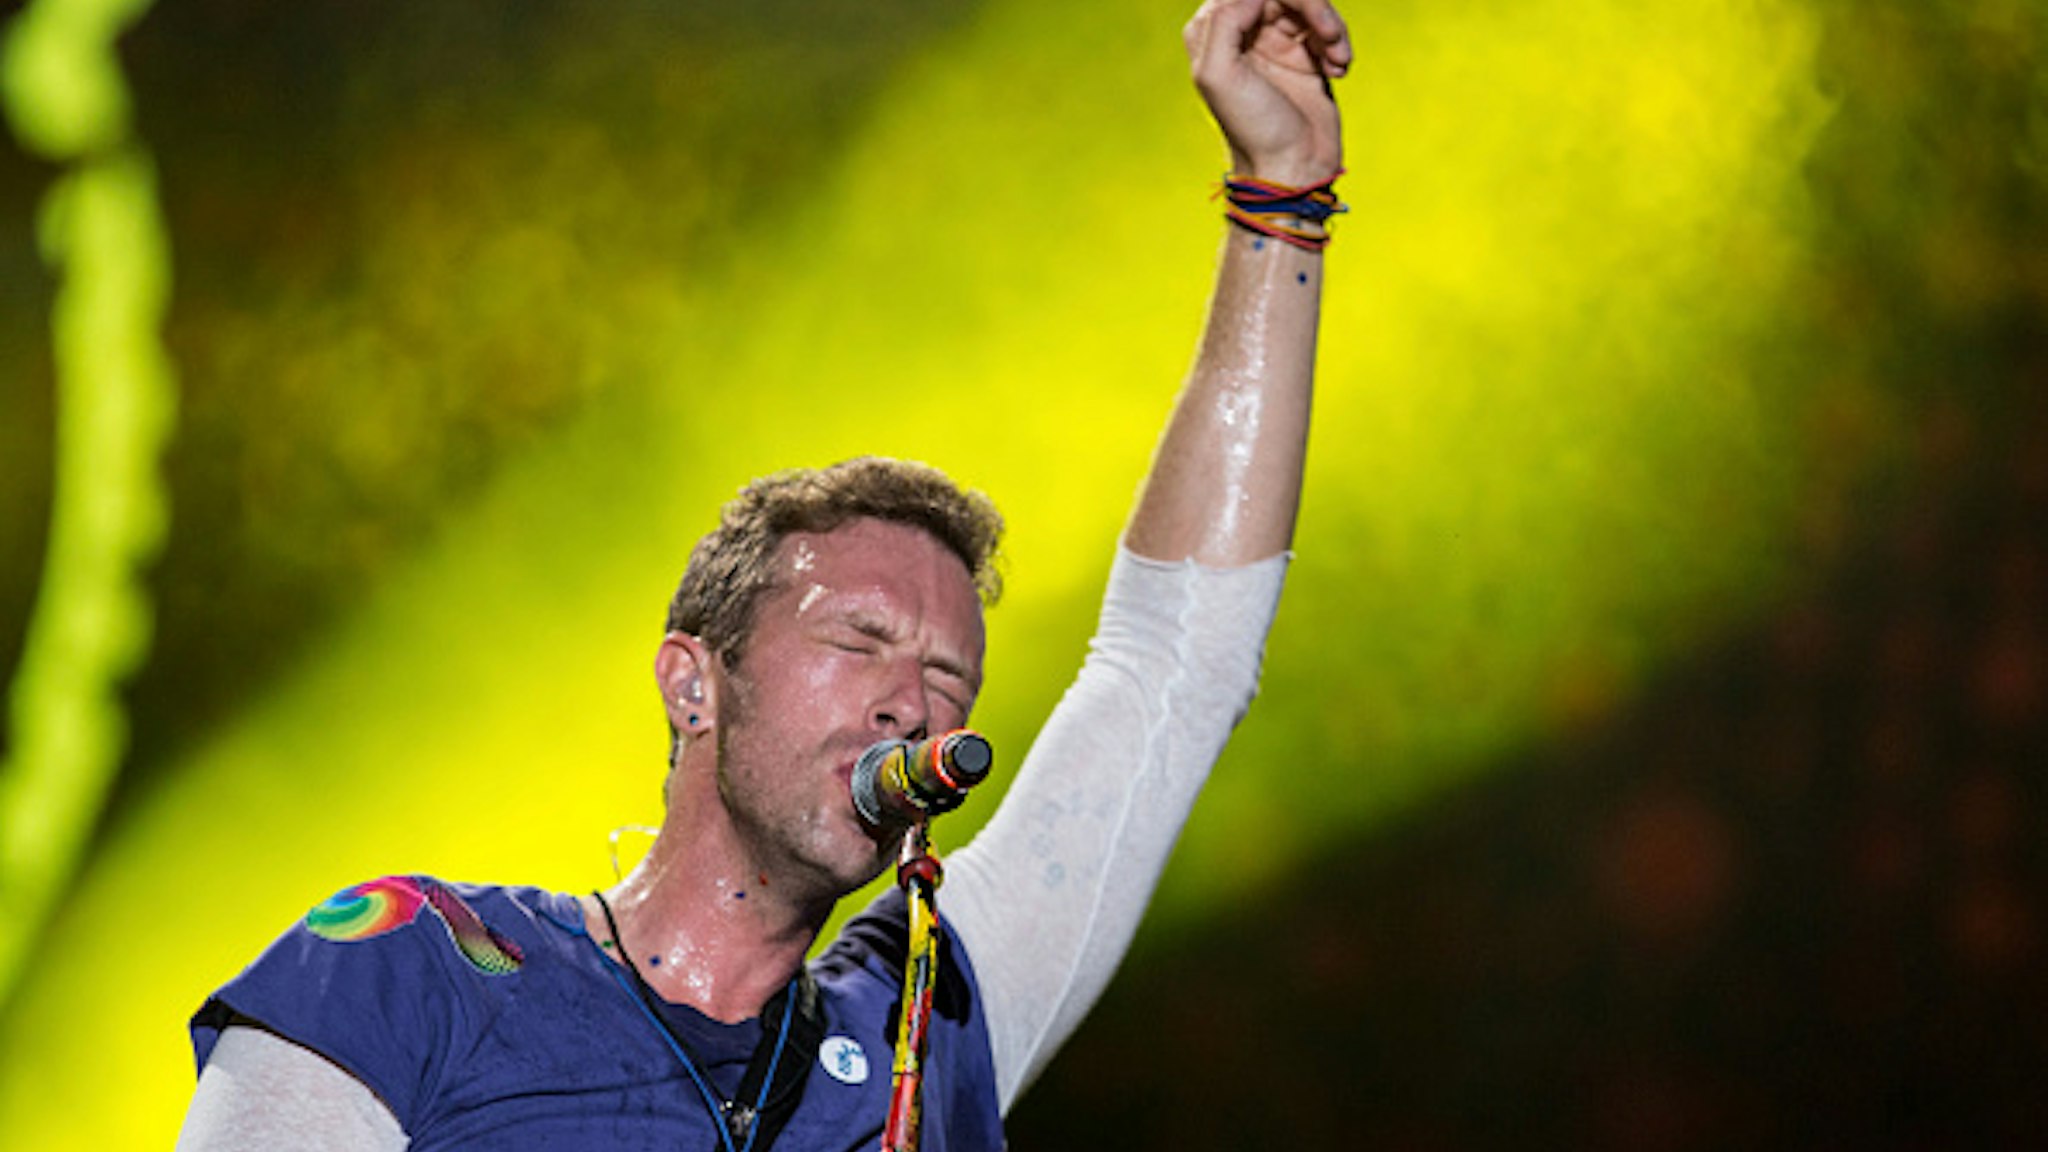 LA PLATA, ARGENTINA - NOVEMBER 14: Chris Martin of Coldplay performs during the 'A Head Full Of Dreams' Tour at Ciudad de La Plata Stadium on November 14, 2017 in La Plata, Argentina.